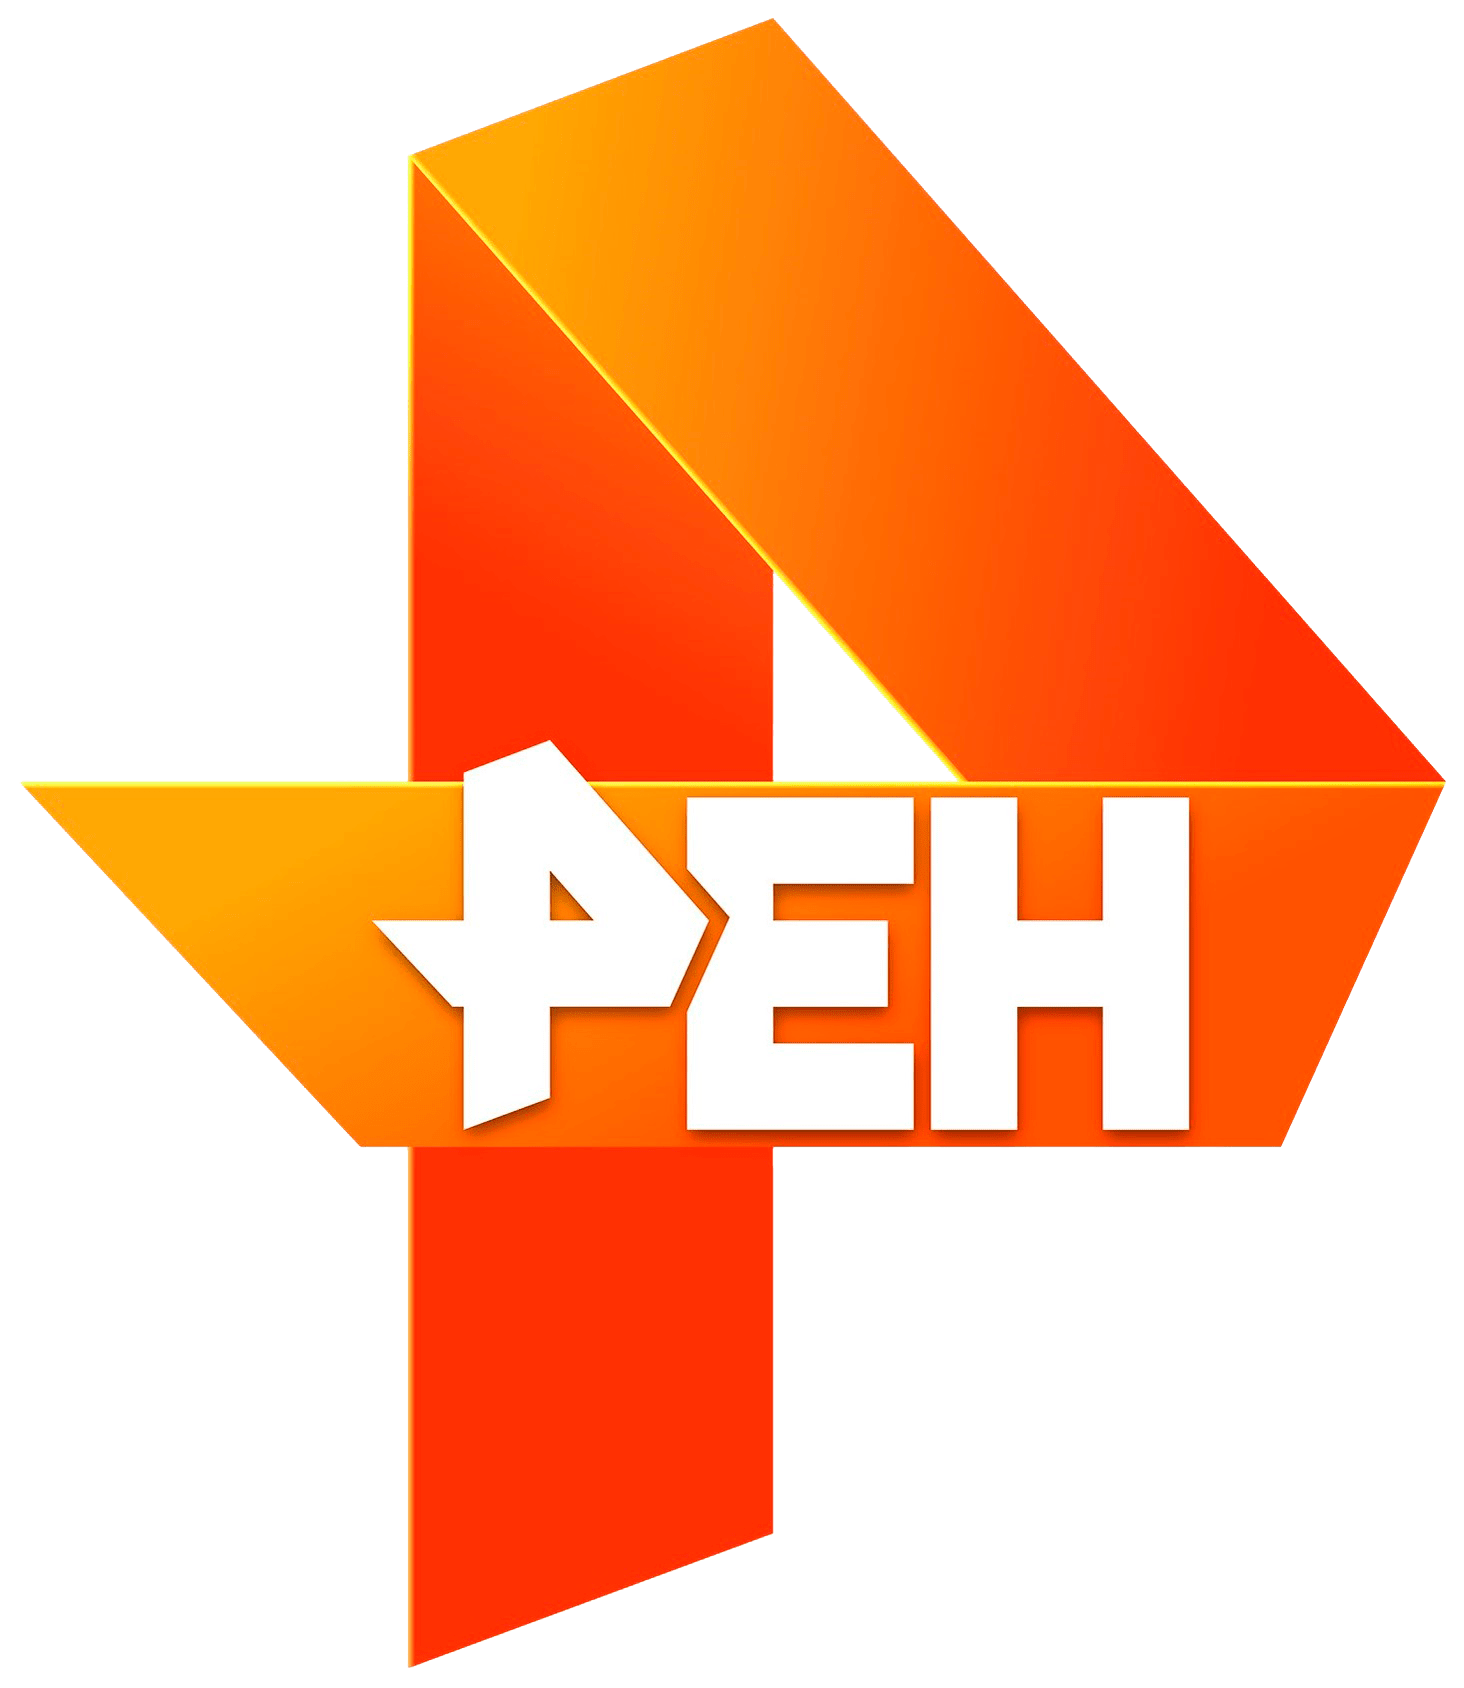 Раземщение рекламы РЕН ТВ, г.Владивосток